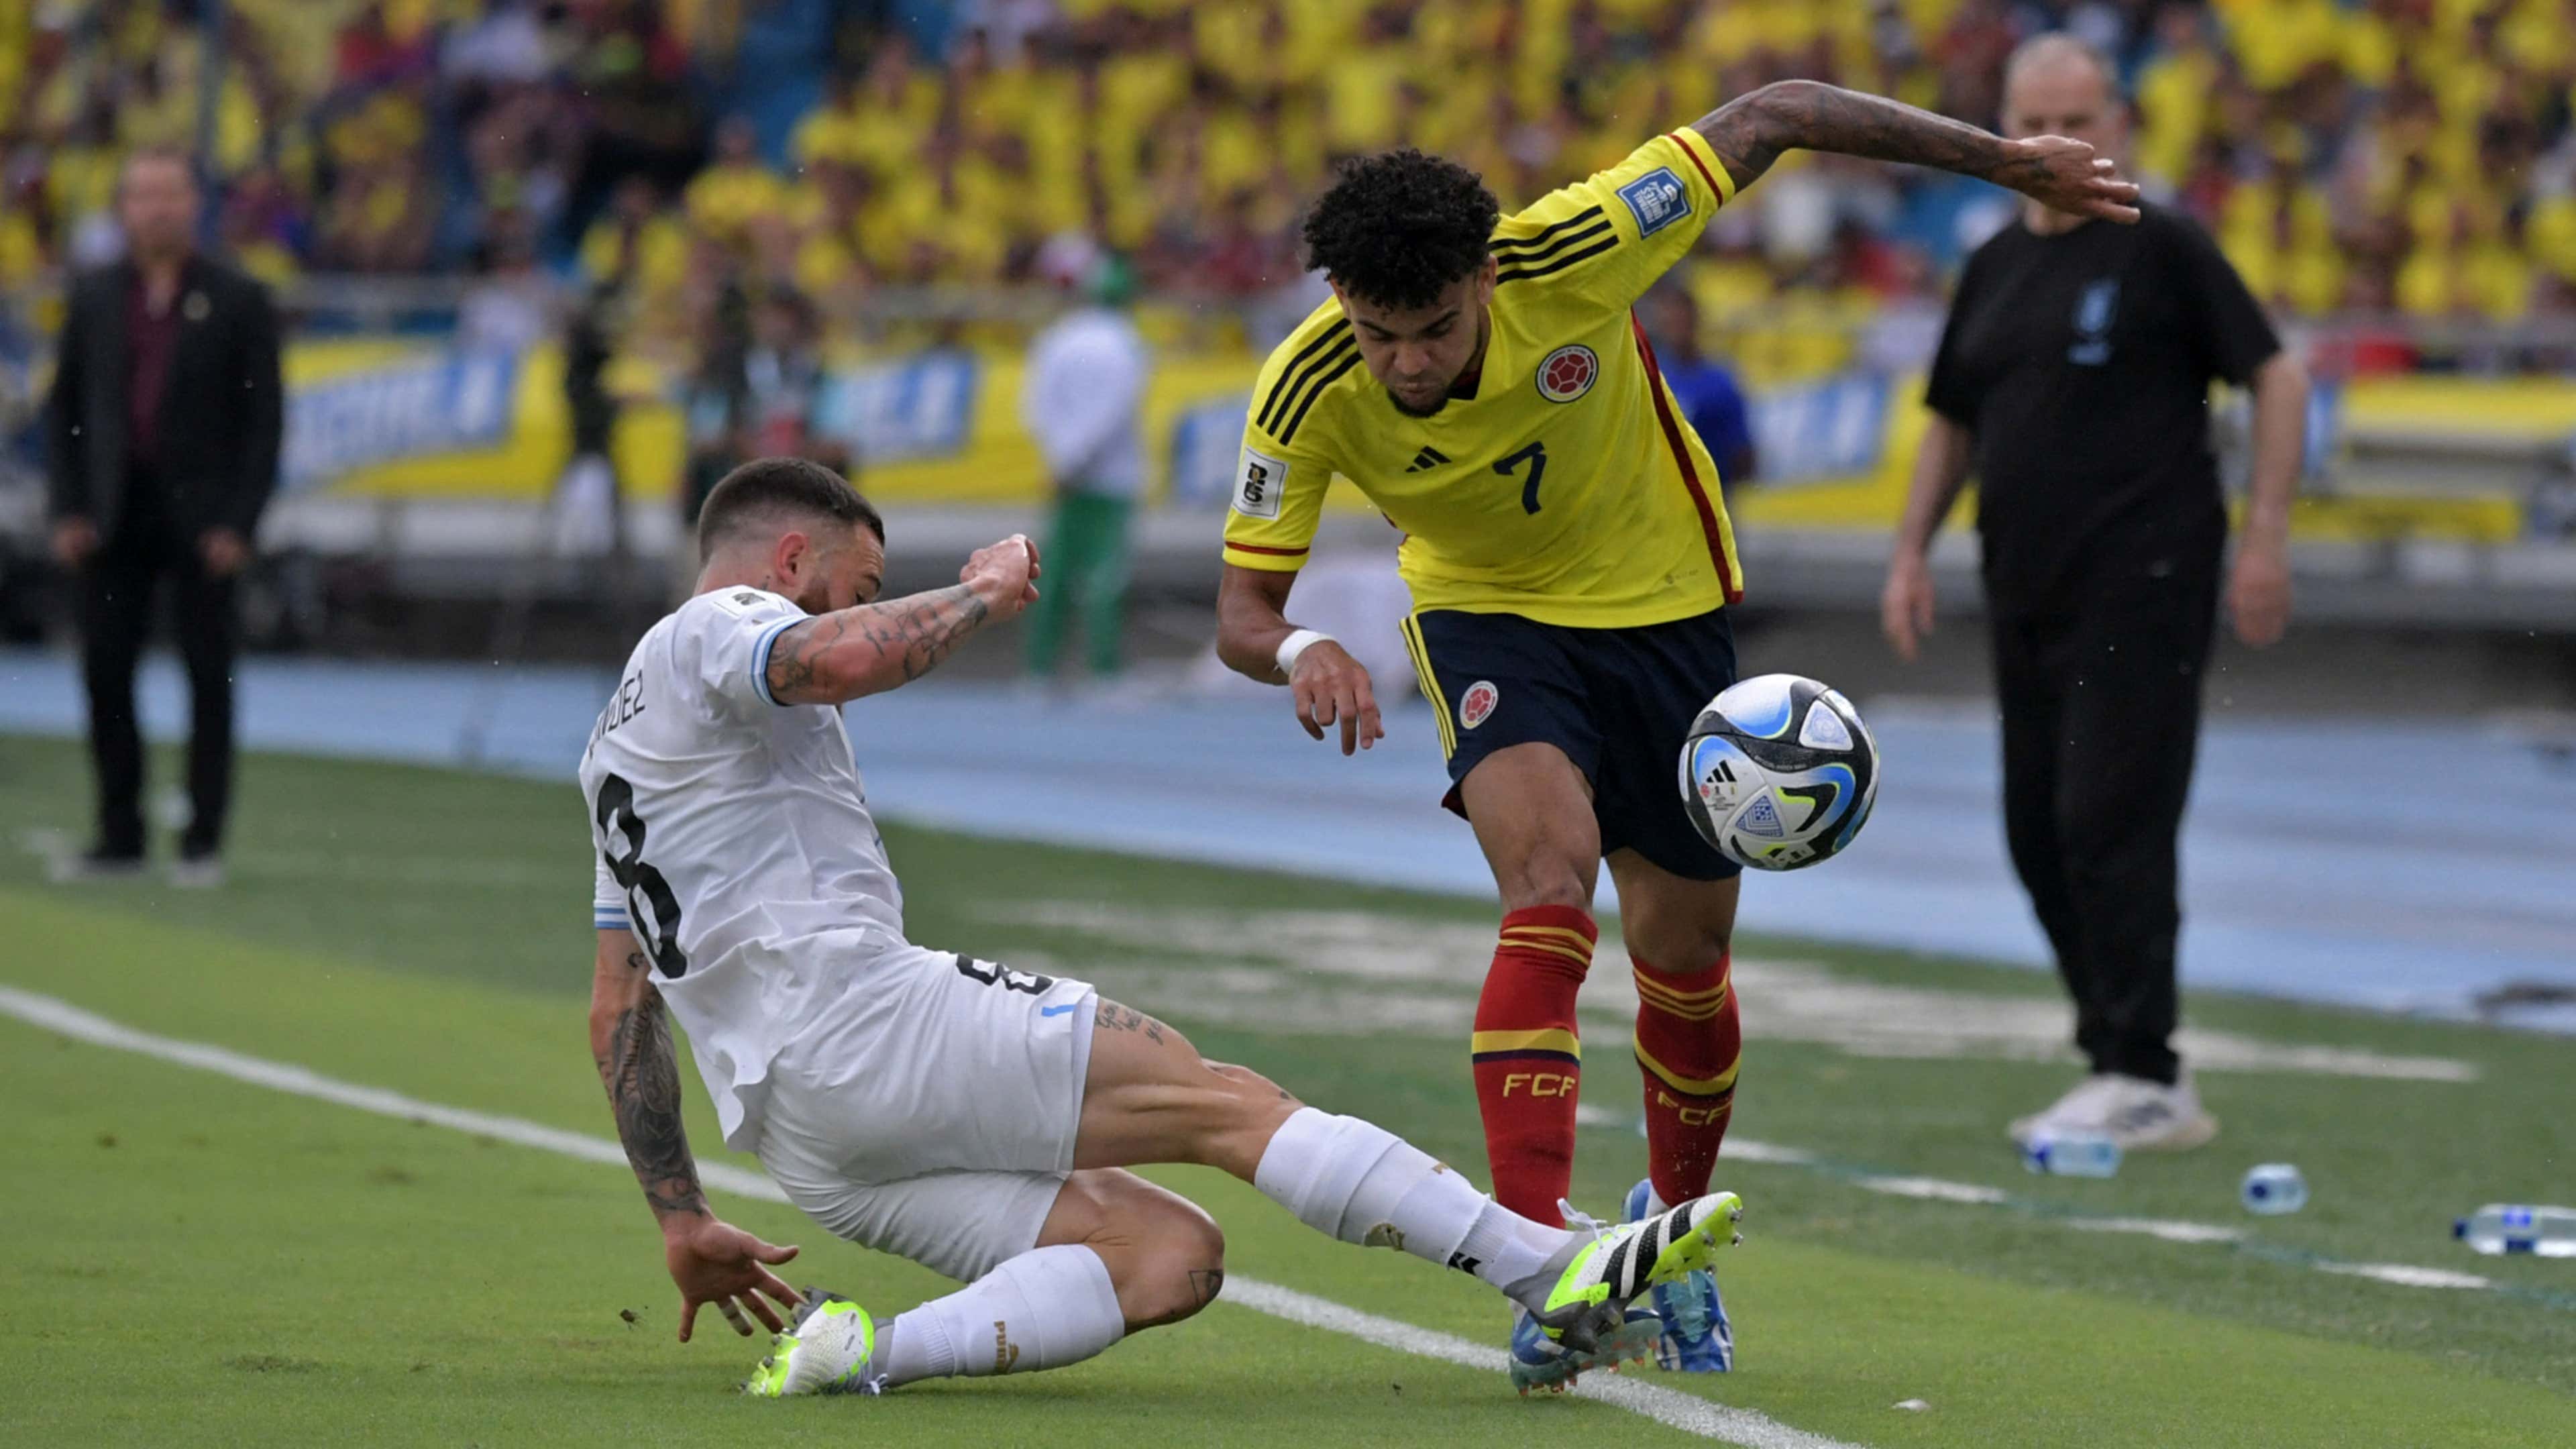 Uruguay vs. Brasil en vivo el partido de Eliminatorias 2026: Goles y  resultado en directo online